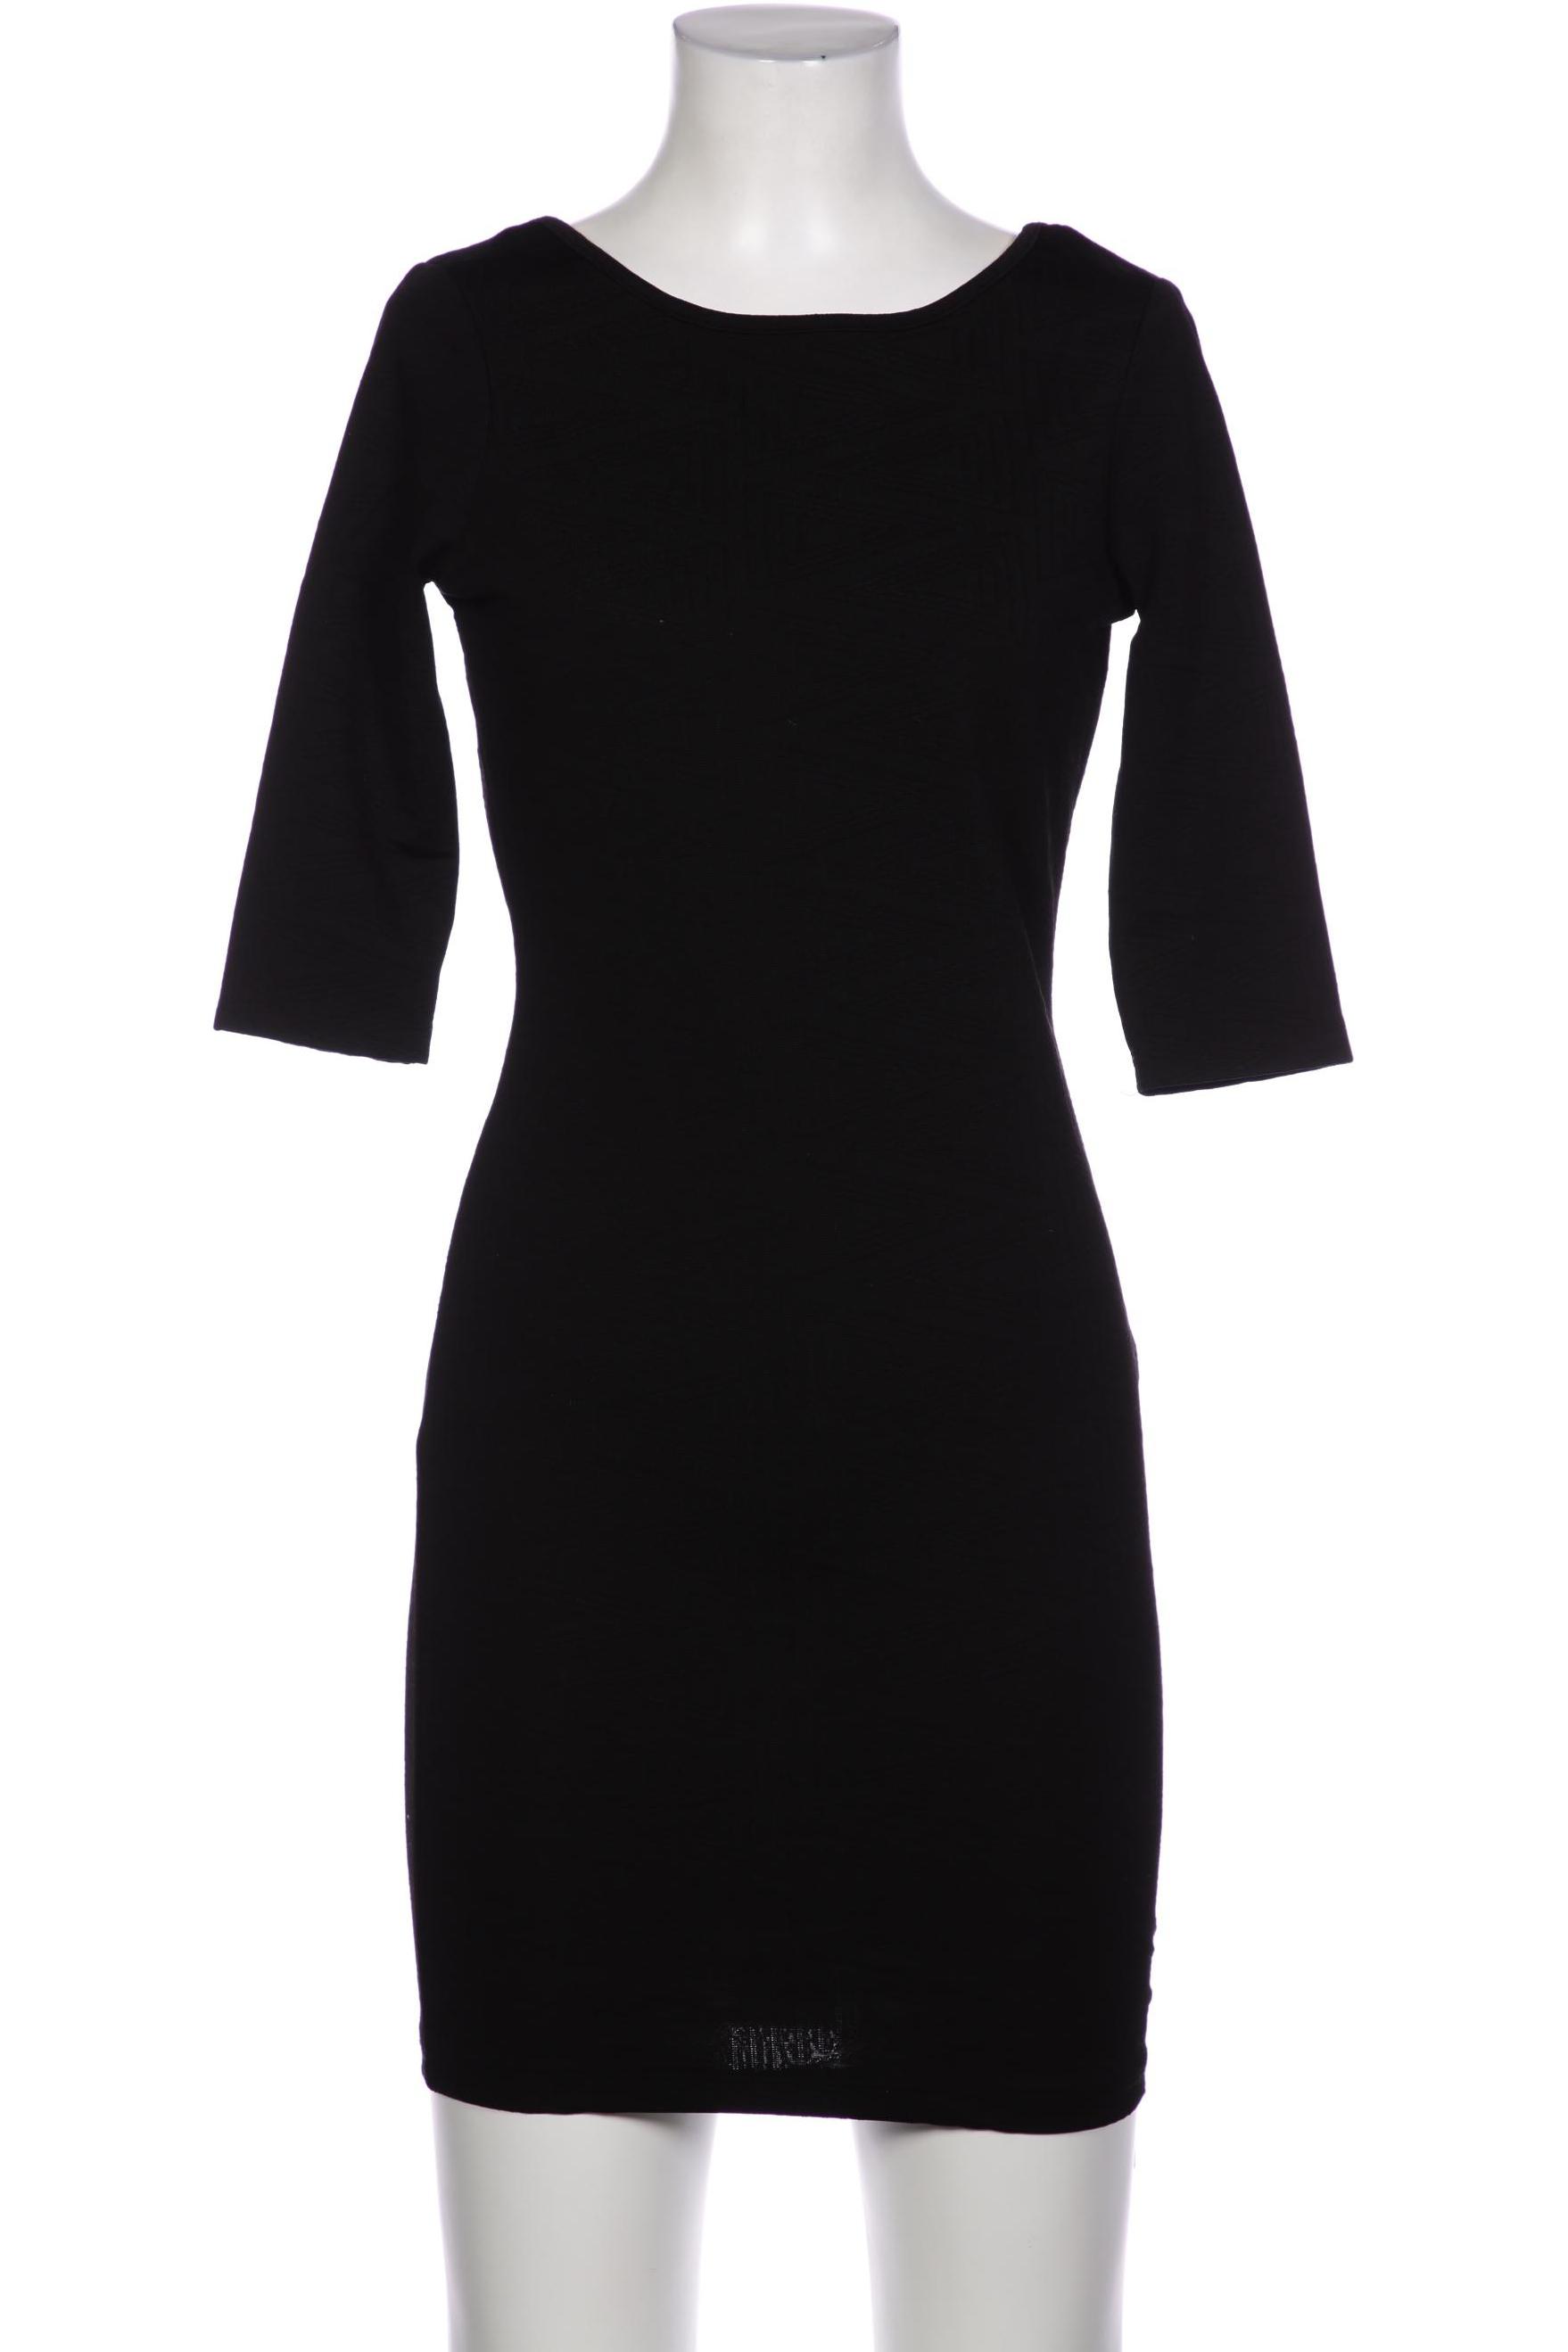 Gina Tricot Damen Kleid, schwarz, Gr. 32 von Gina Tricot